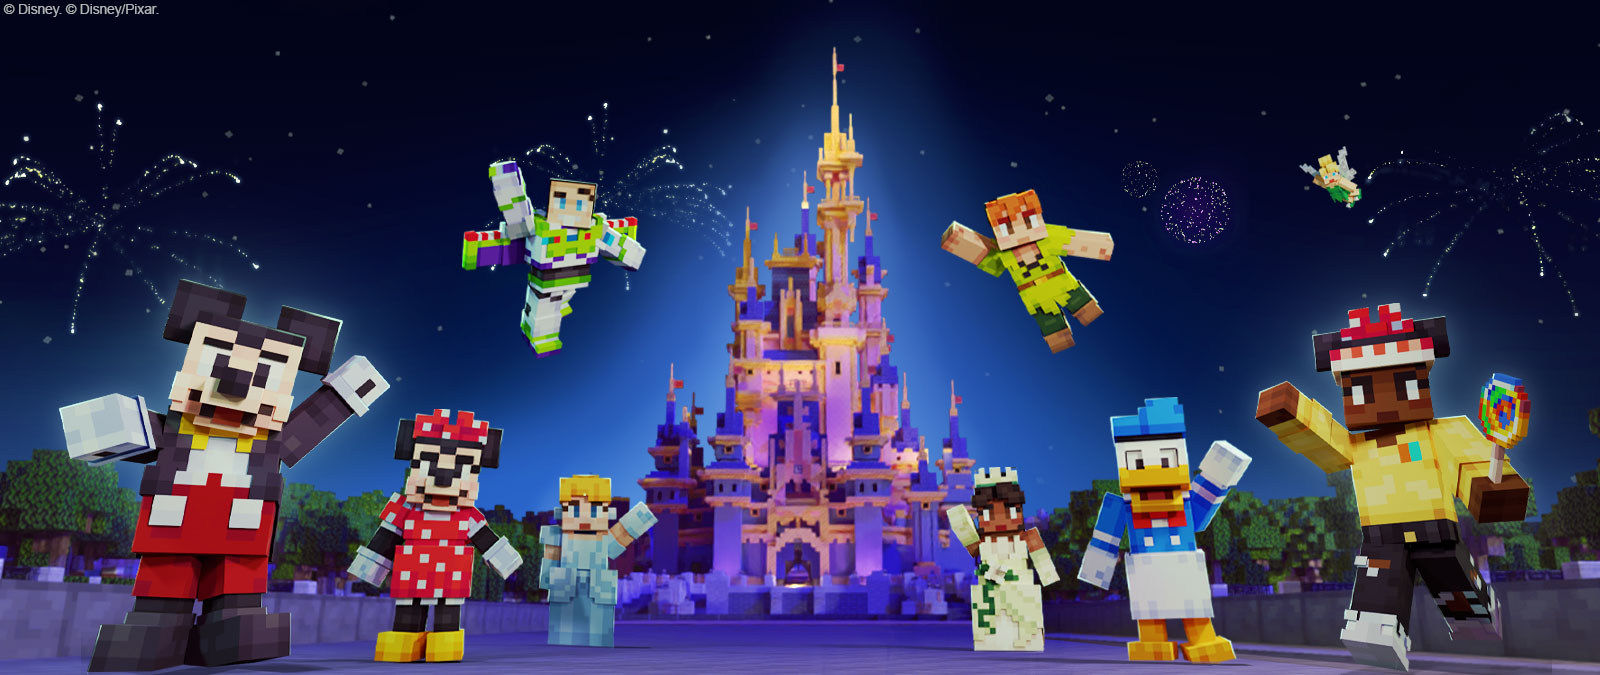 Mickey Mouse, Minnie Mouse, Buzz Lightyear, Cinderela, Peter Pan, Tiana, Pato Donald, Sininho e outro personagem em estilo Minecraft em frente ao castelo da Disney